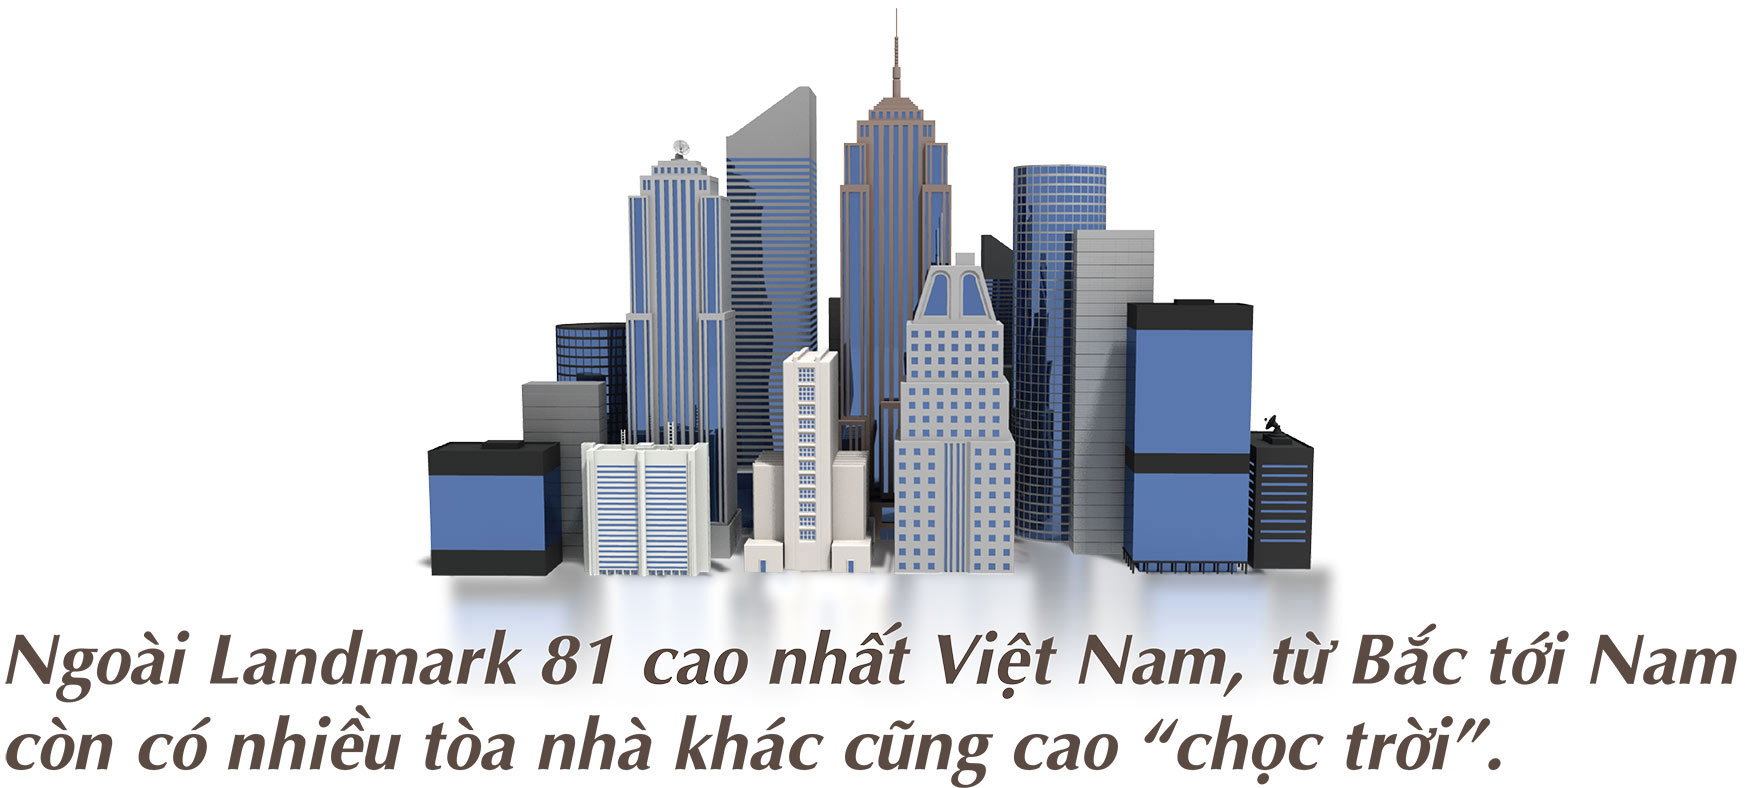 [Magazine] Landmark 81 và những tòa nhà cao “chọc trời” tại Việt Nam - 2